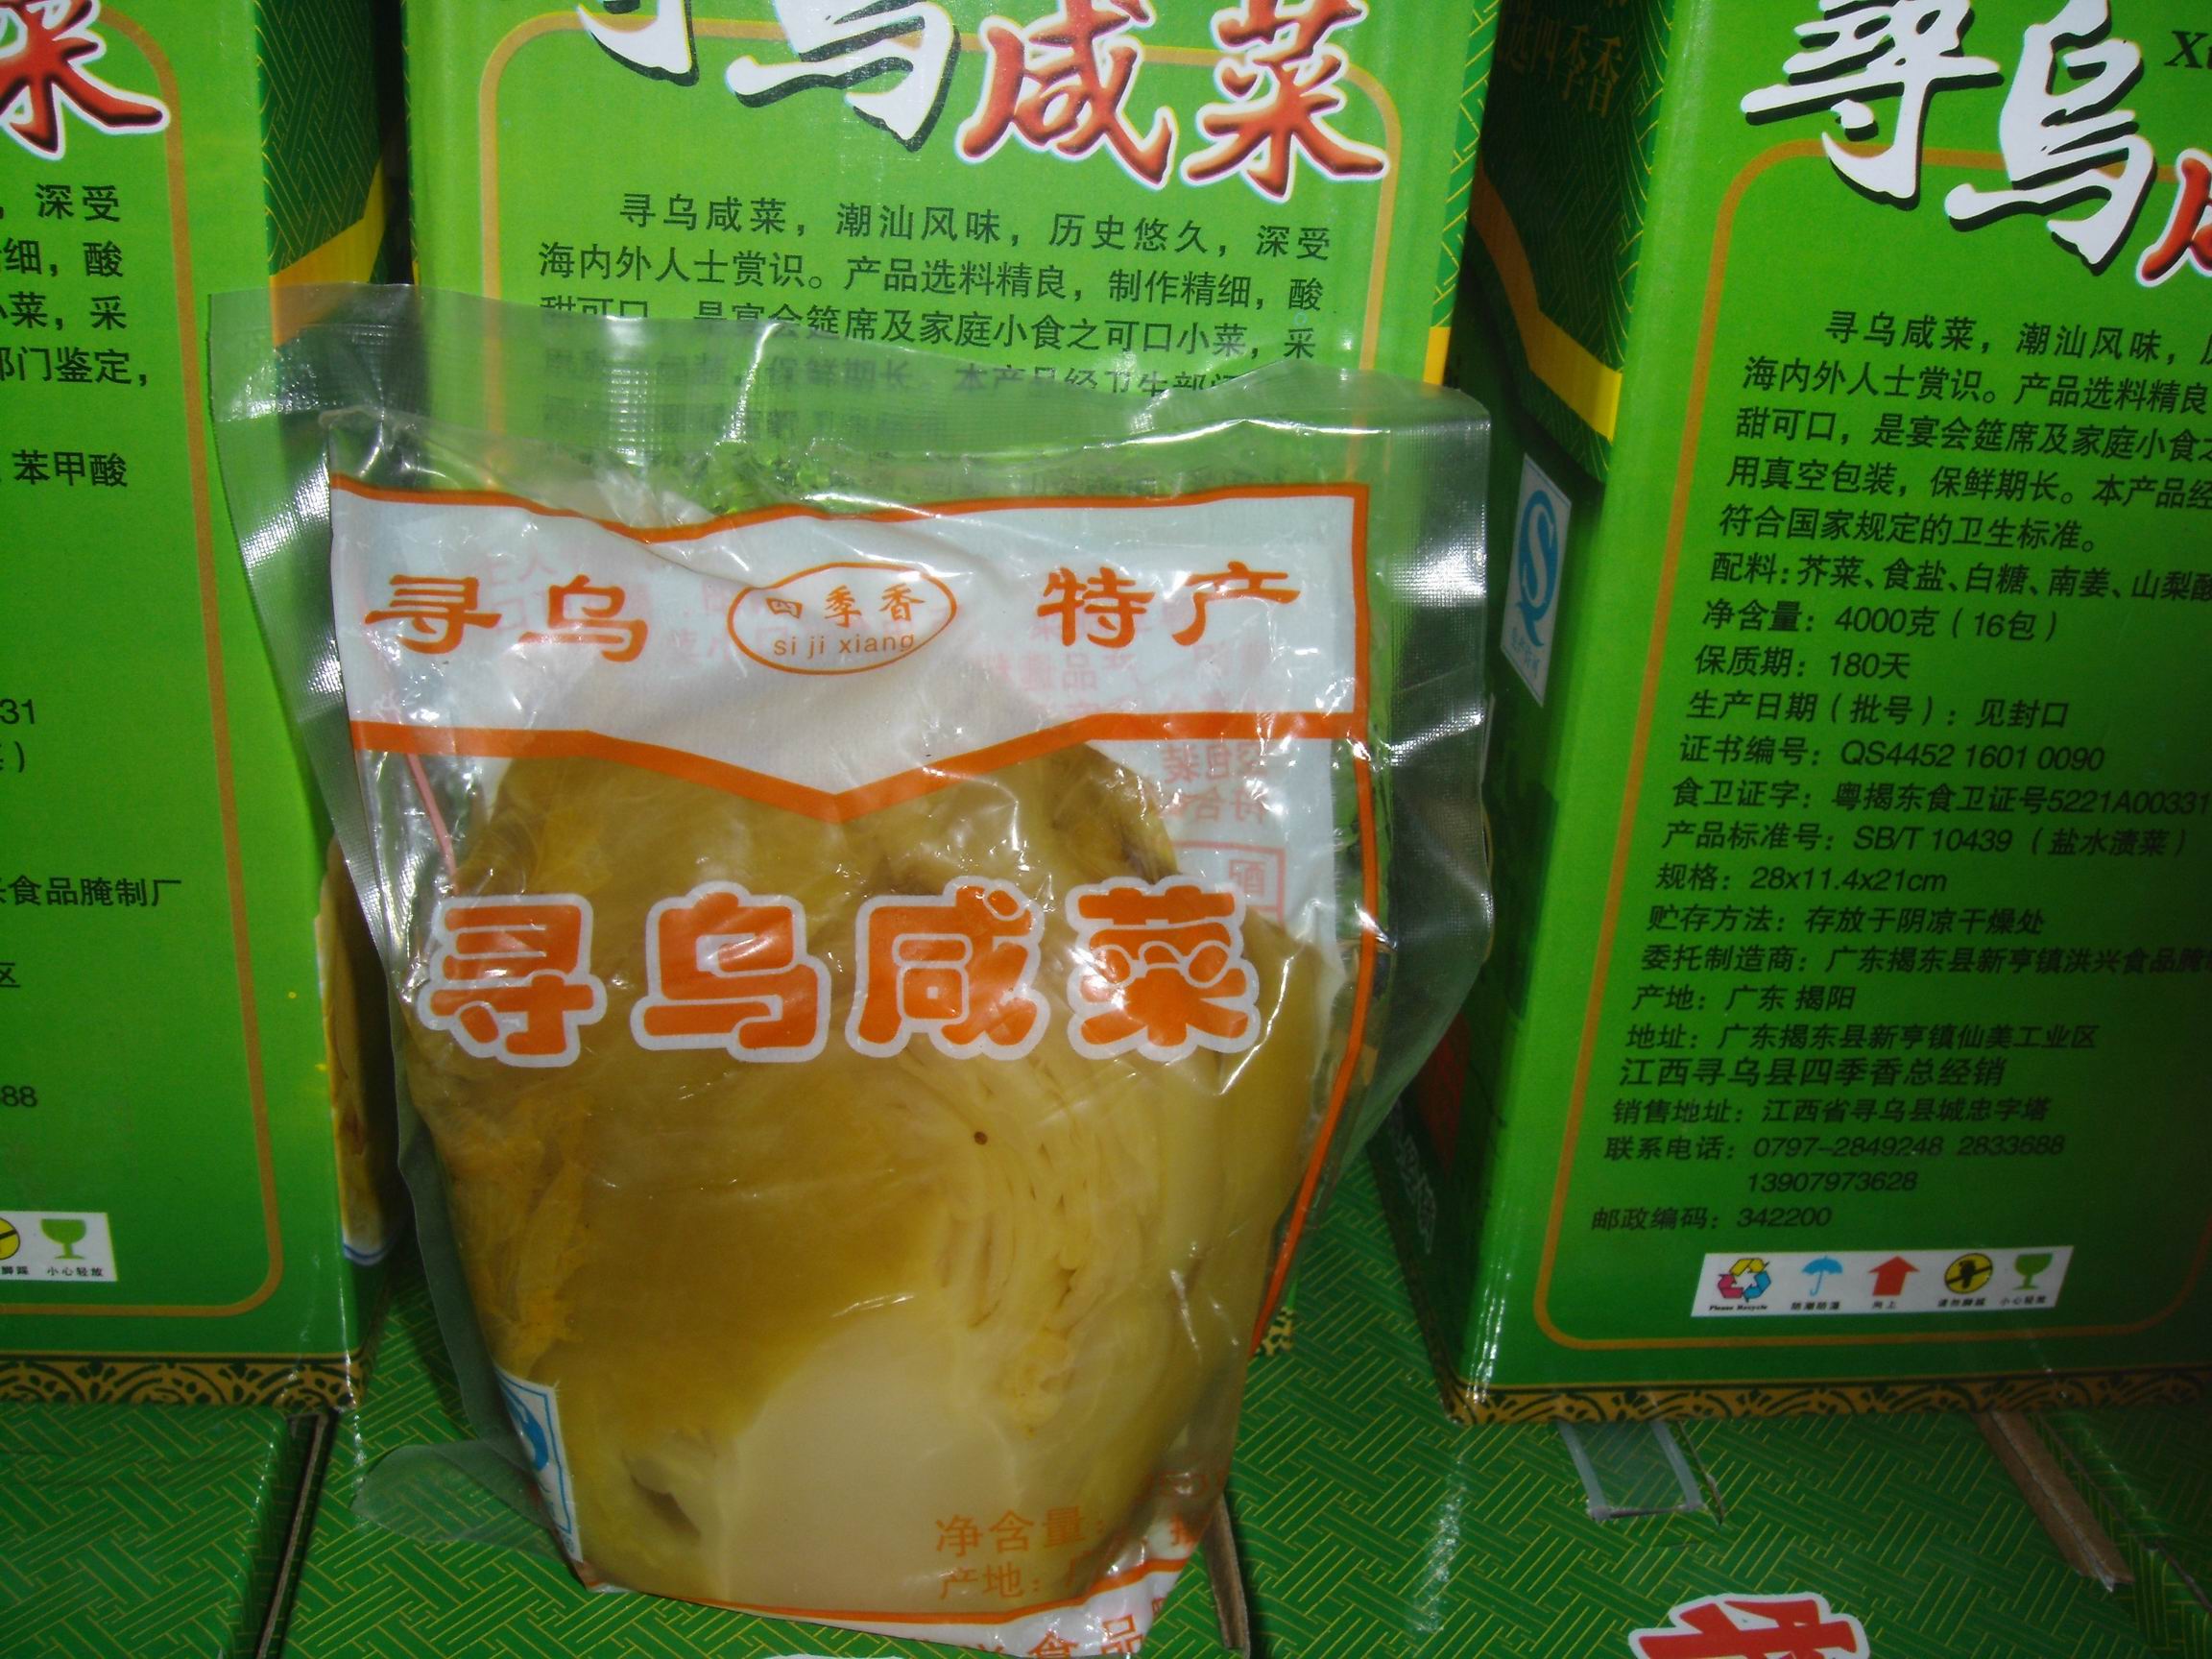 江西赣南寻乌土特产水咸菜,煮炒香脆,每包2.5元,买一箱42元